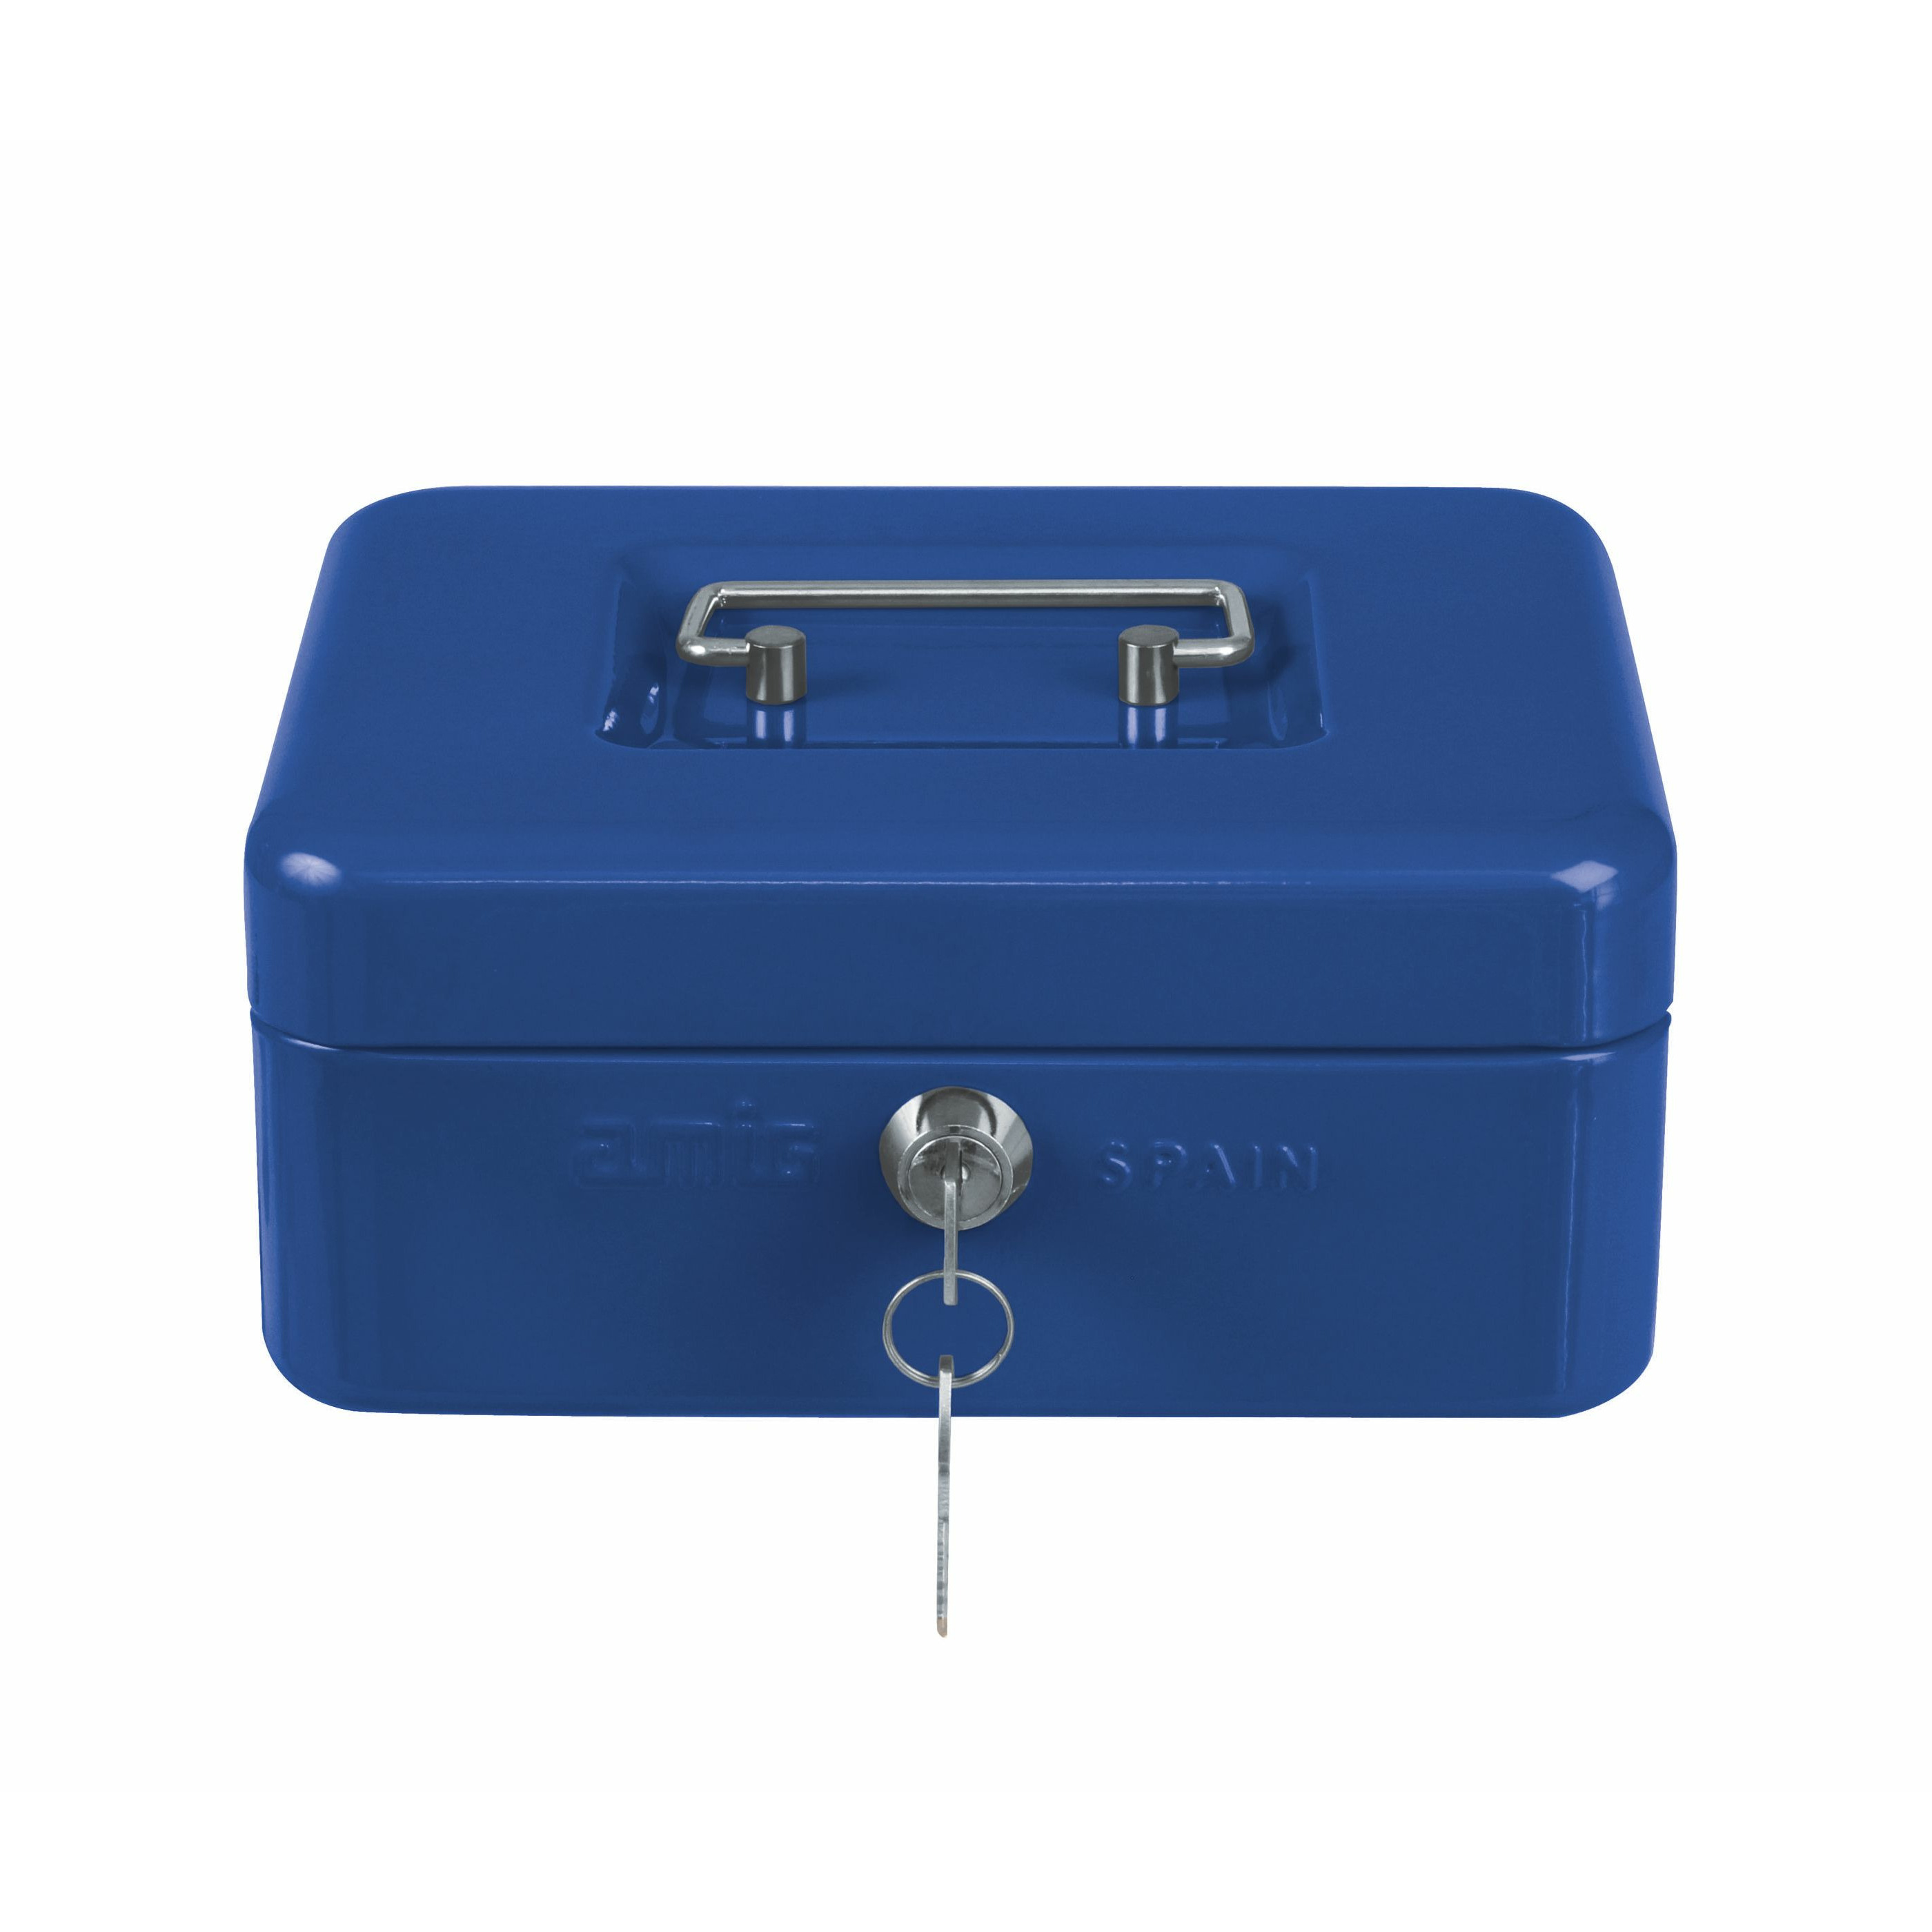 AMIG Geldkistje met 2 sleutels blauw staal 20 x 16 x 9 cm inbraakbeveiliging